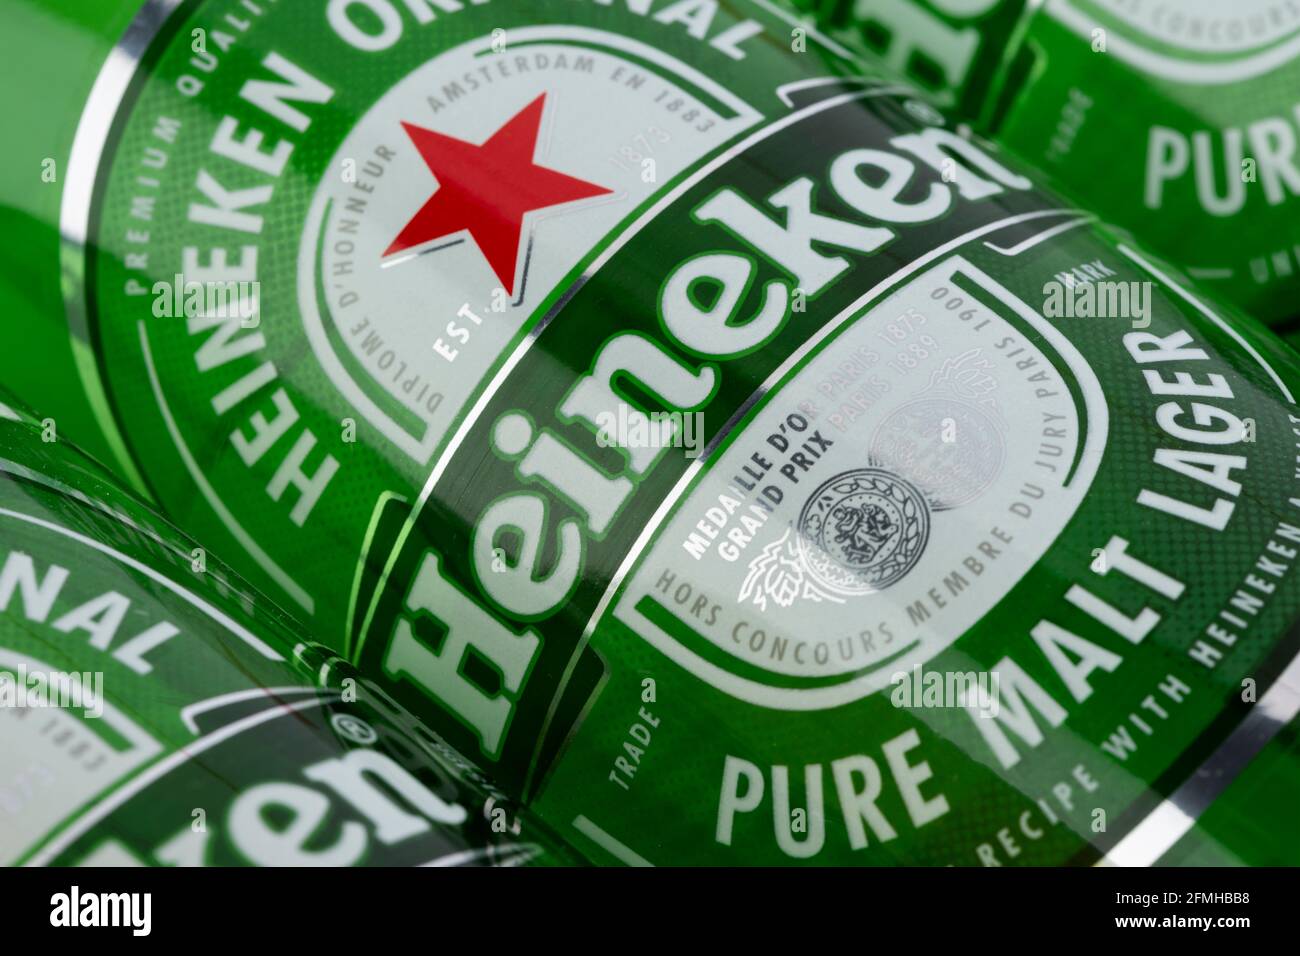 Le logo de la marque néerlandaise Heineken tel qu'il est indiqué sur une étiquette apposée sur l'une des bouteilles de bière de la société. Banque D'Images